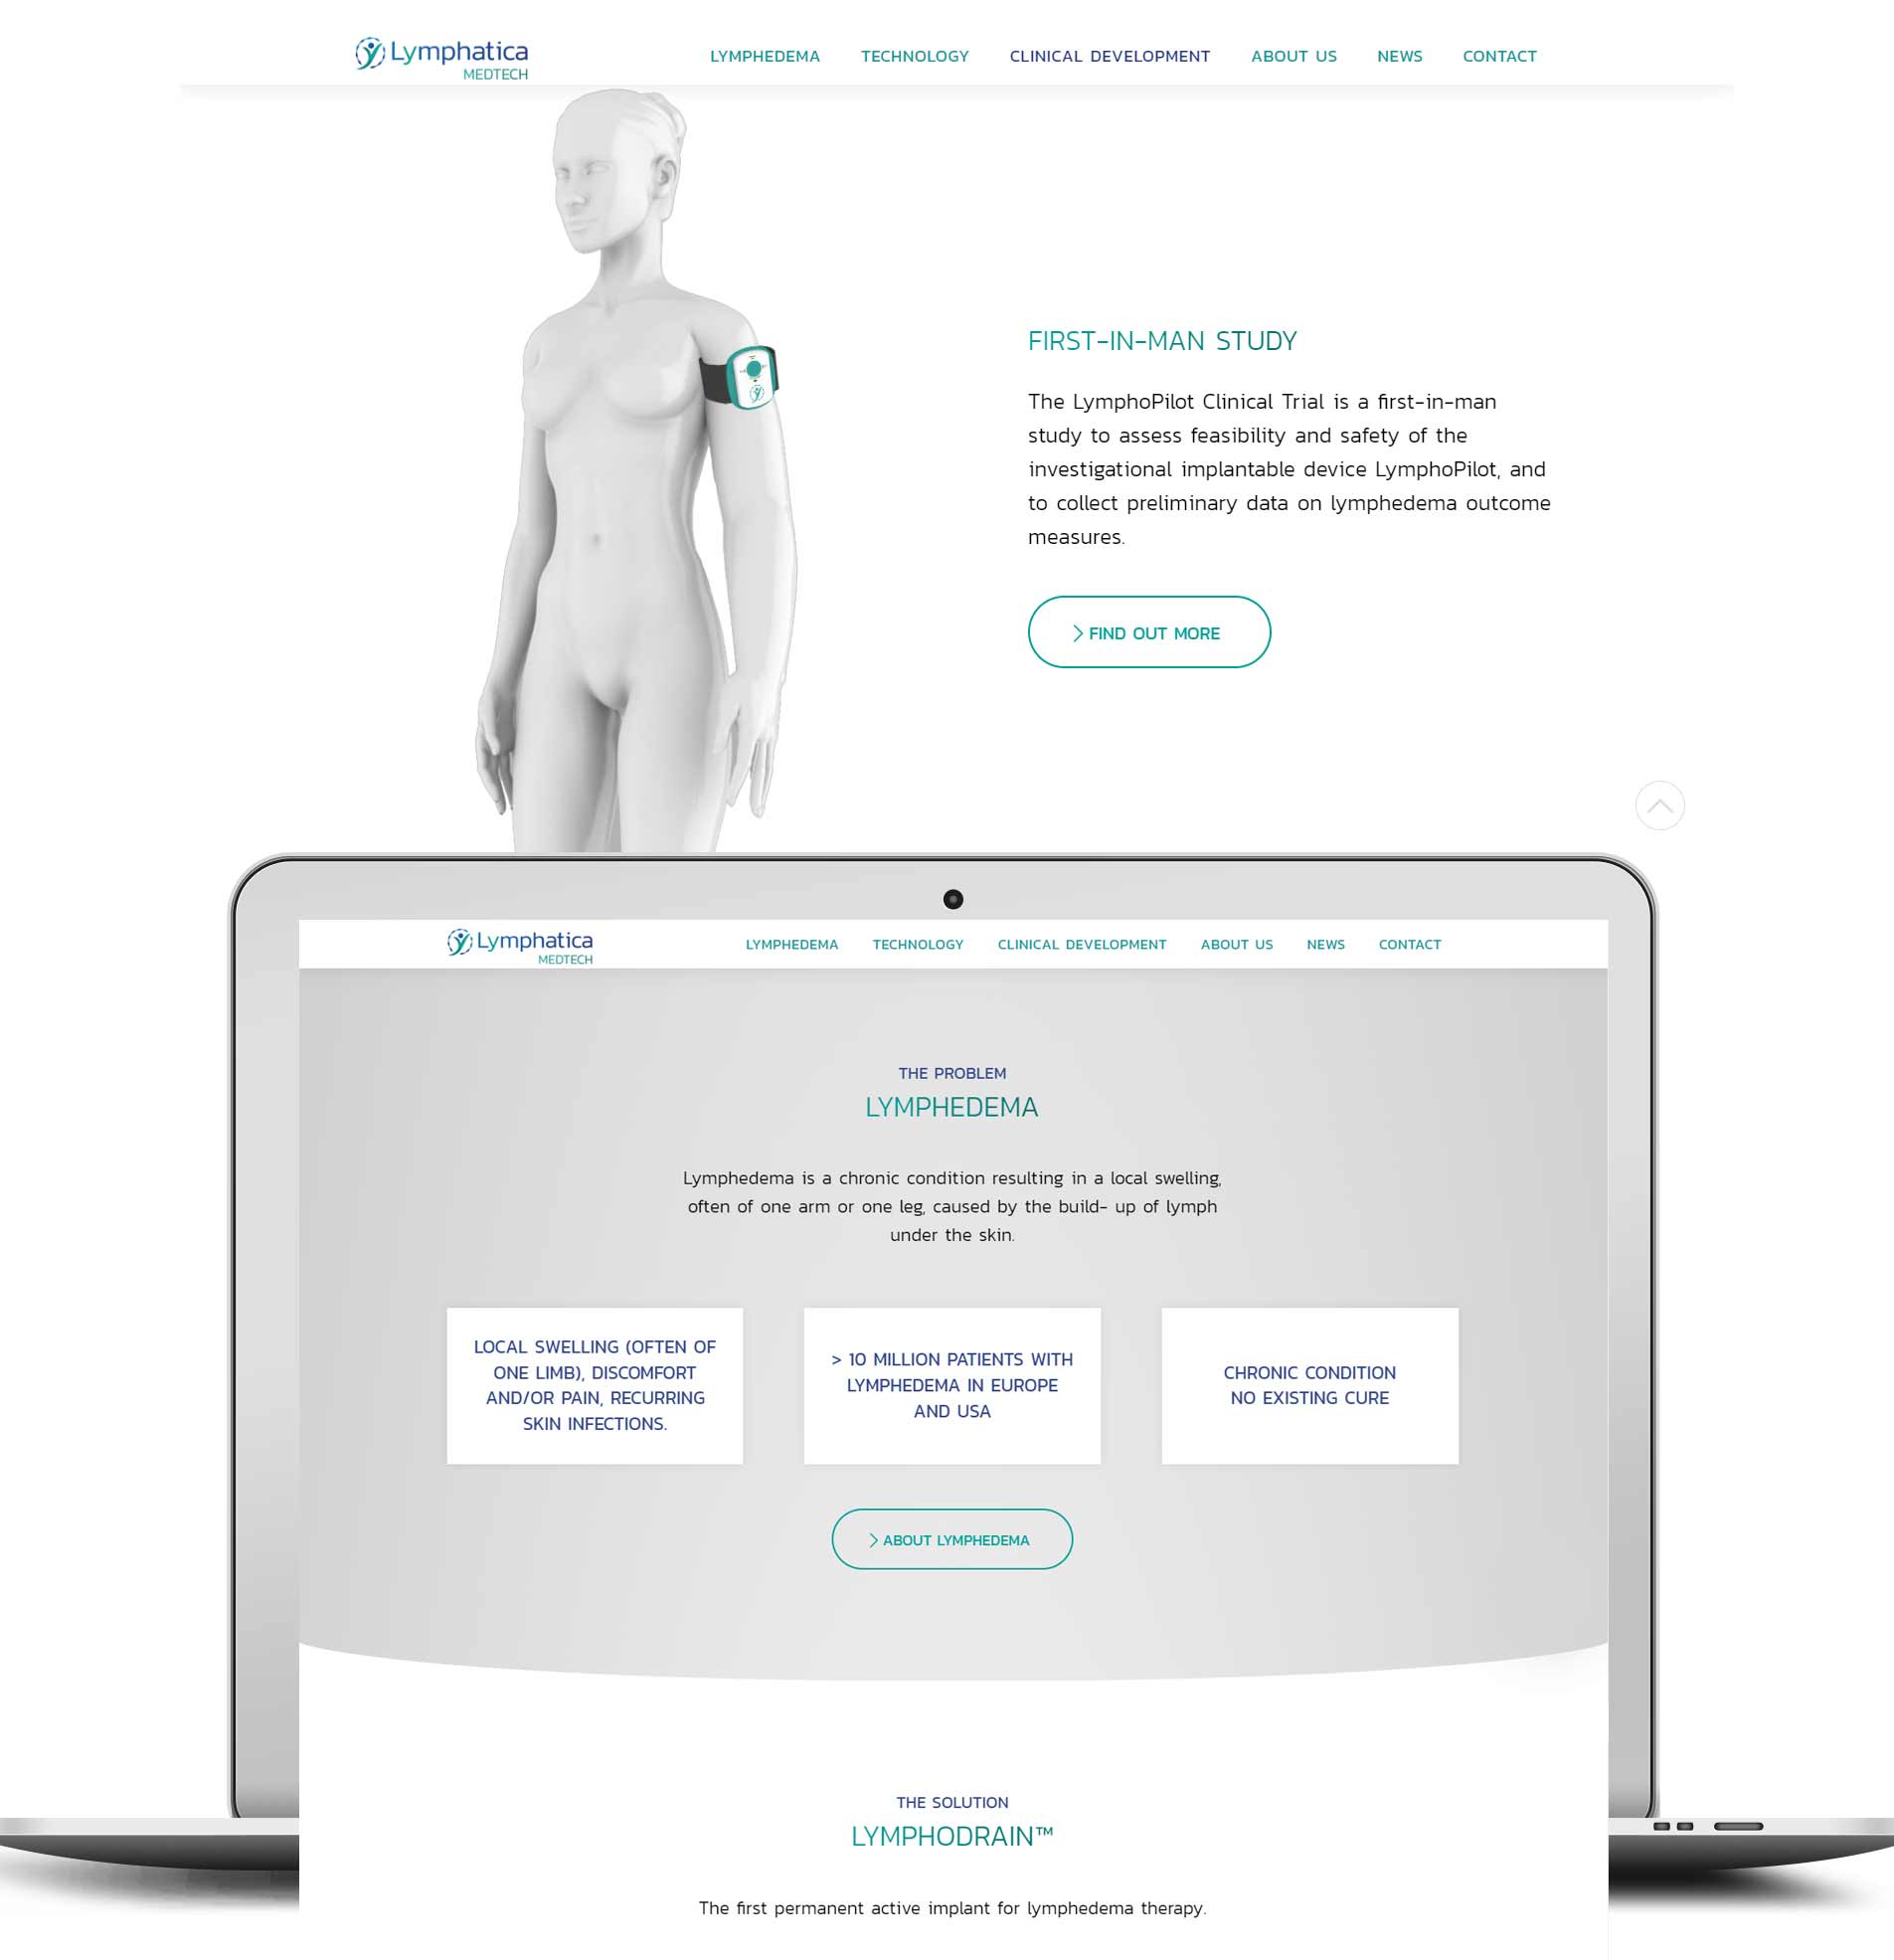 design sito web azienda medtech svizzera